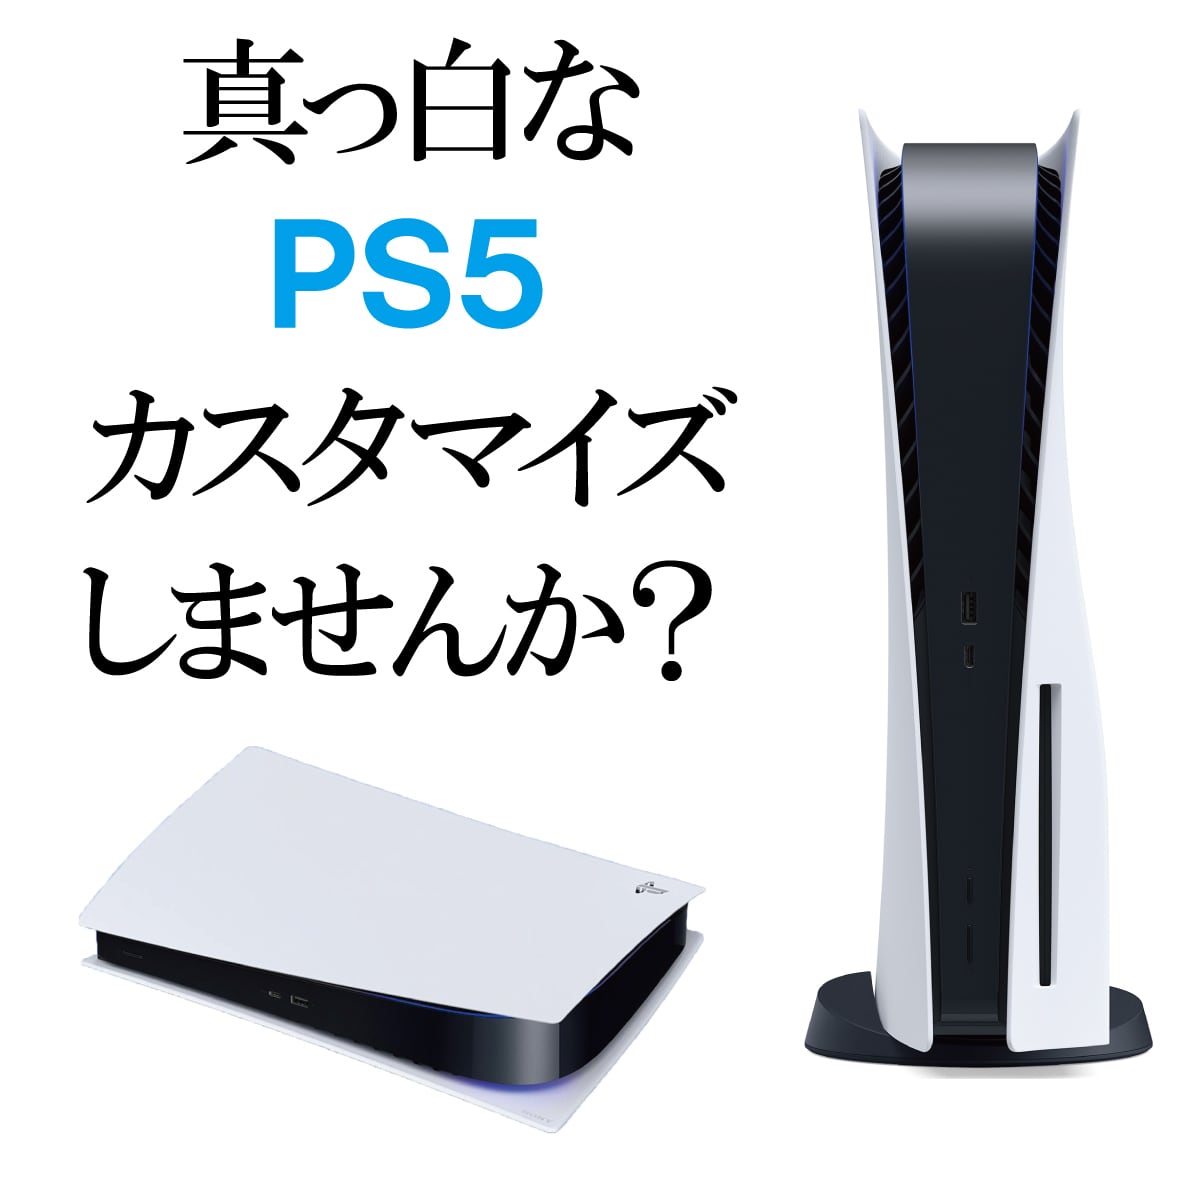 PS5 カバー プレステ5 フェイスプレート 本体 Play Station 5 通常版 デジタルエディション PlayStation5 周辺機器  純正コントローラーとの色合わせ CFI-1000 CFI-1100 CFI-1200